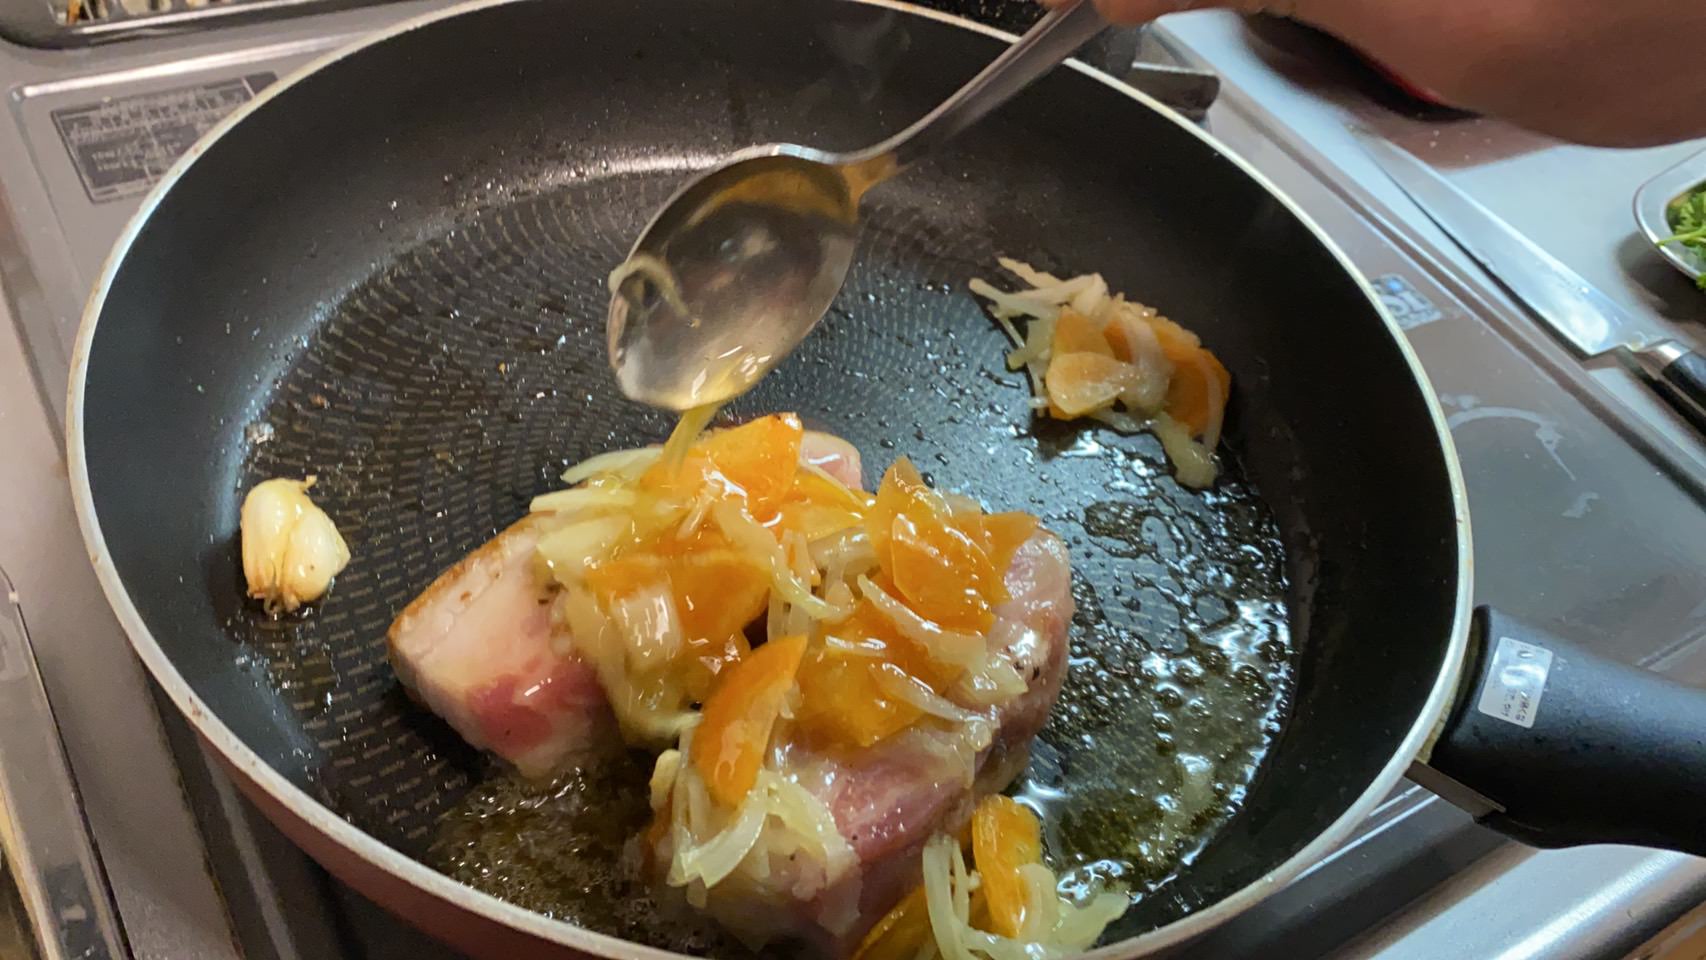 豚バラ肉にしんなりとした香味野菜と焼き油をかけながら焼いている様子です。